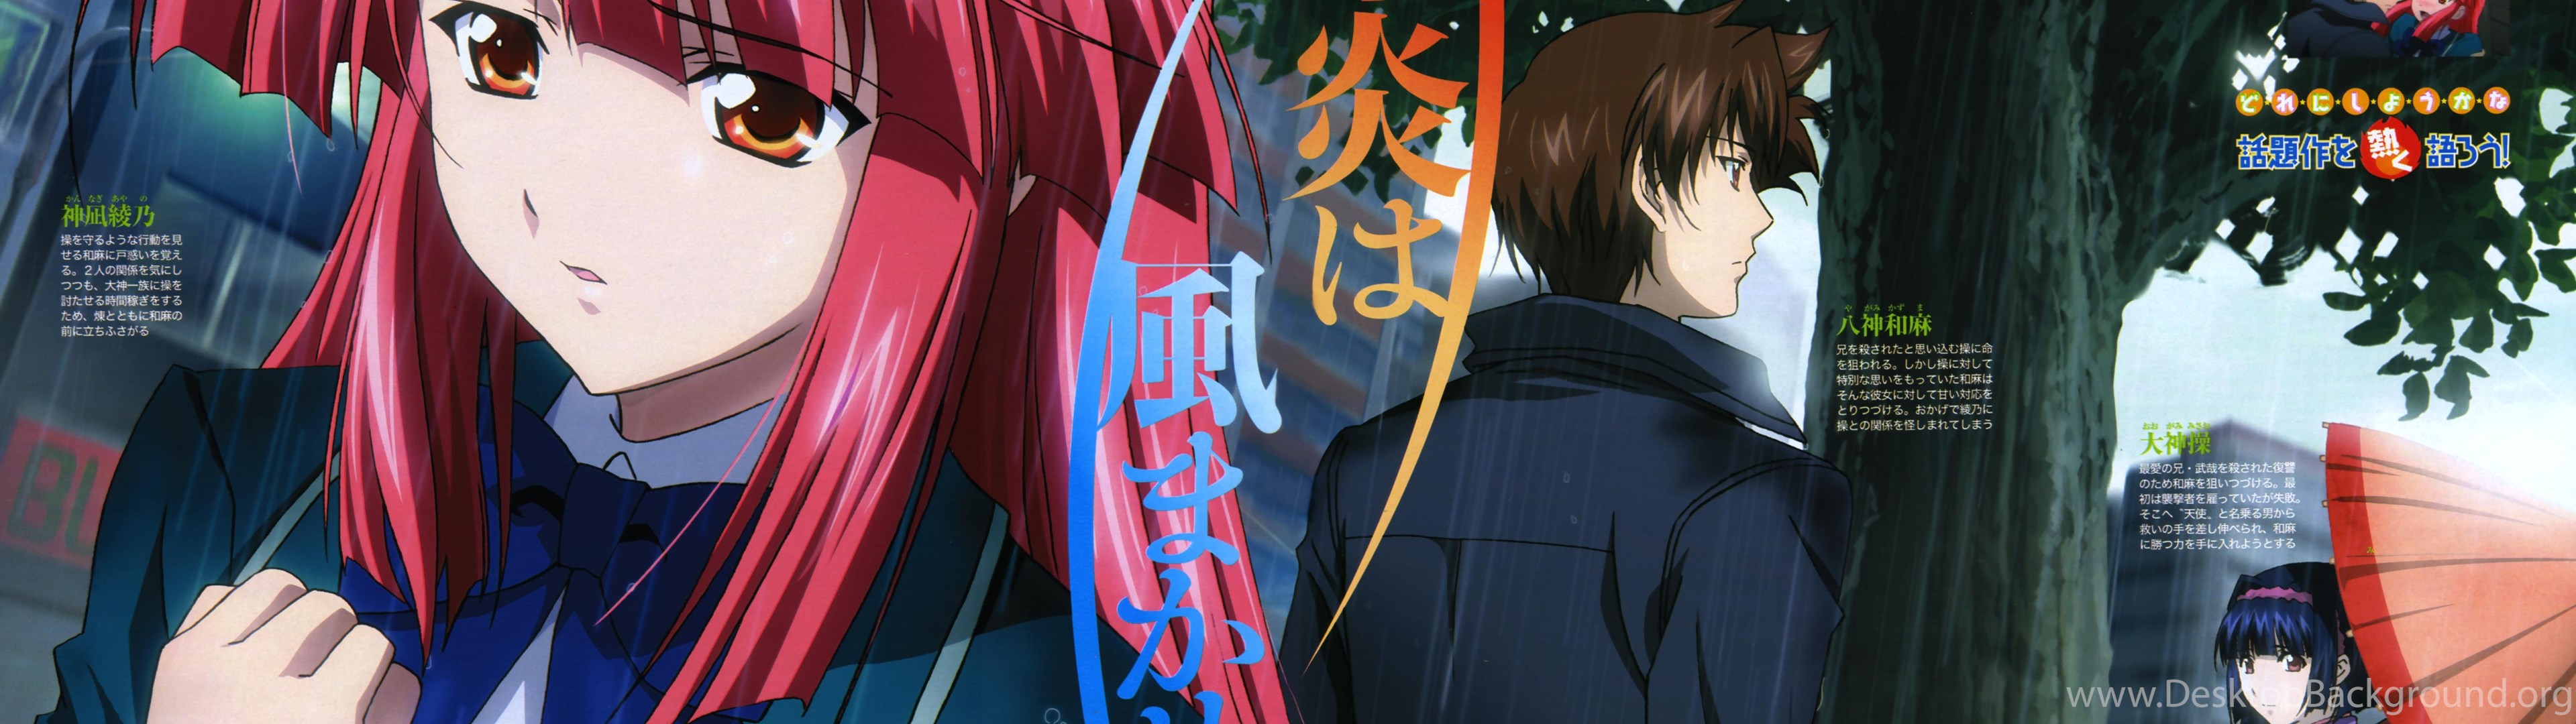 Kannagi Kazuma Zerochan Anime Image Board Desktop Background